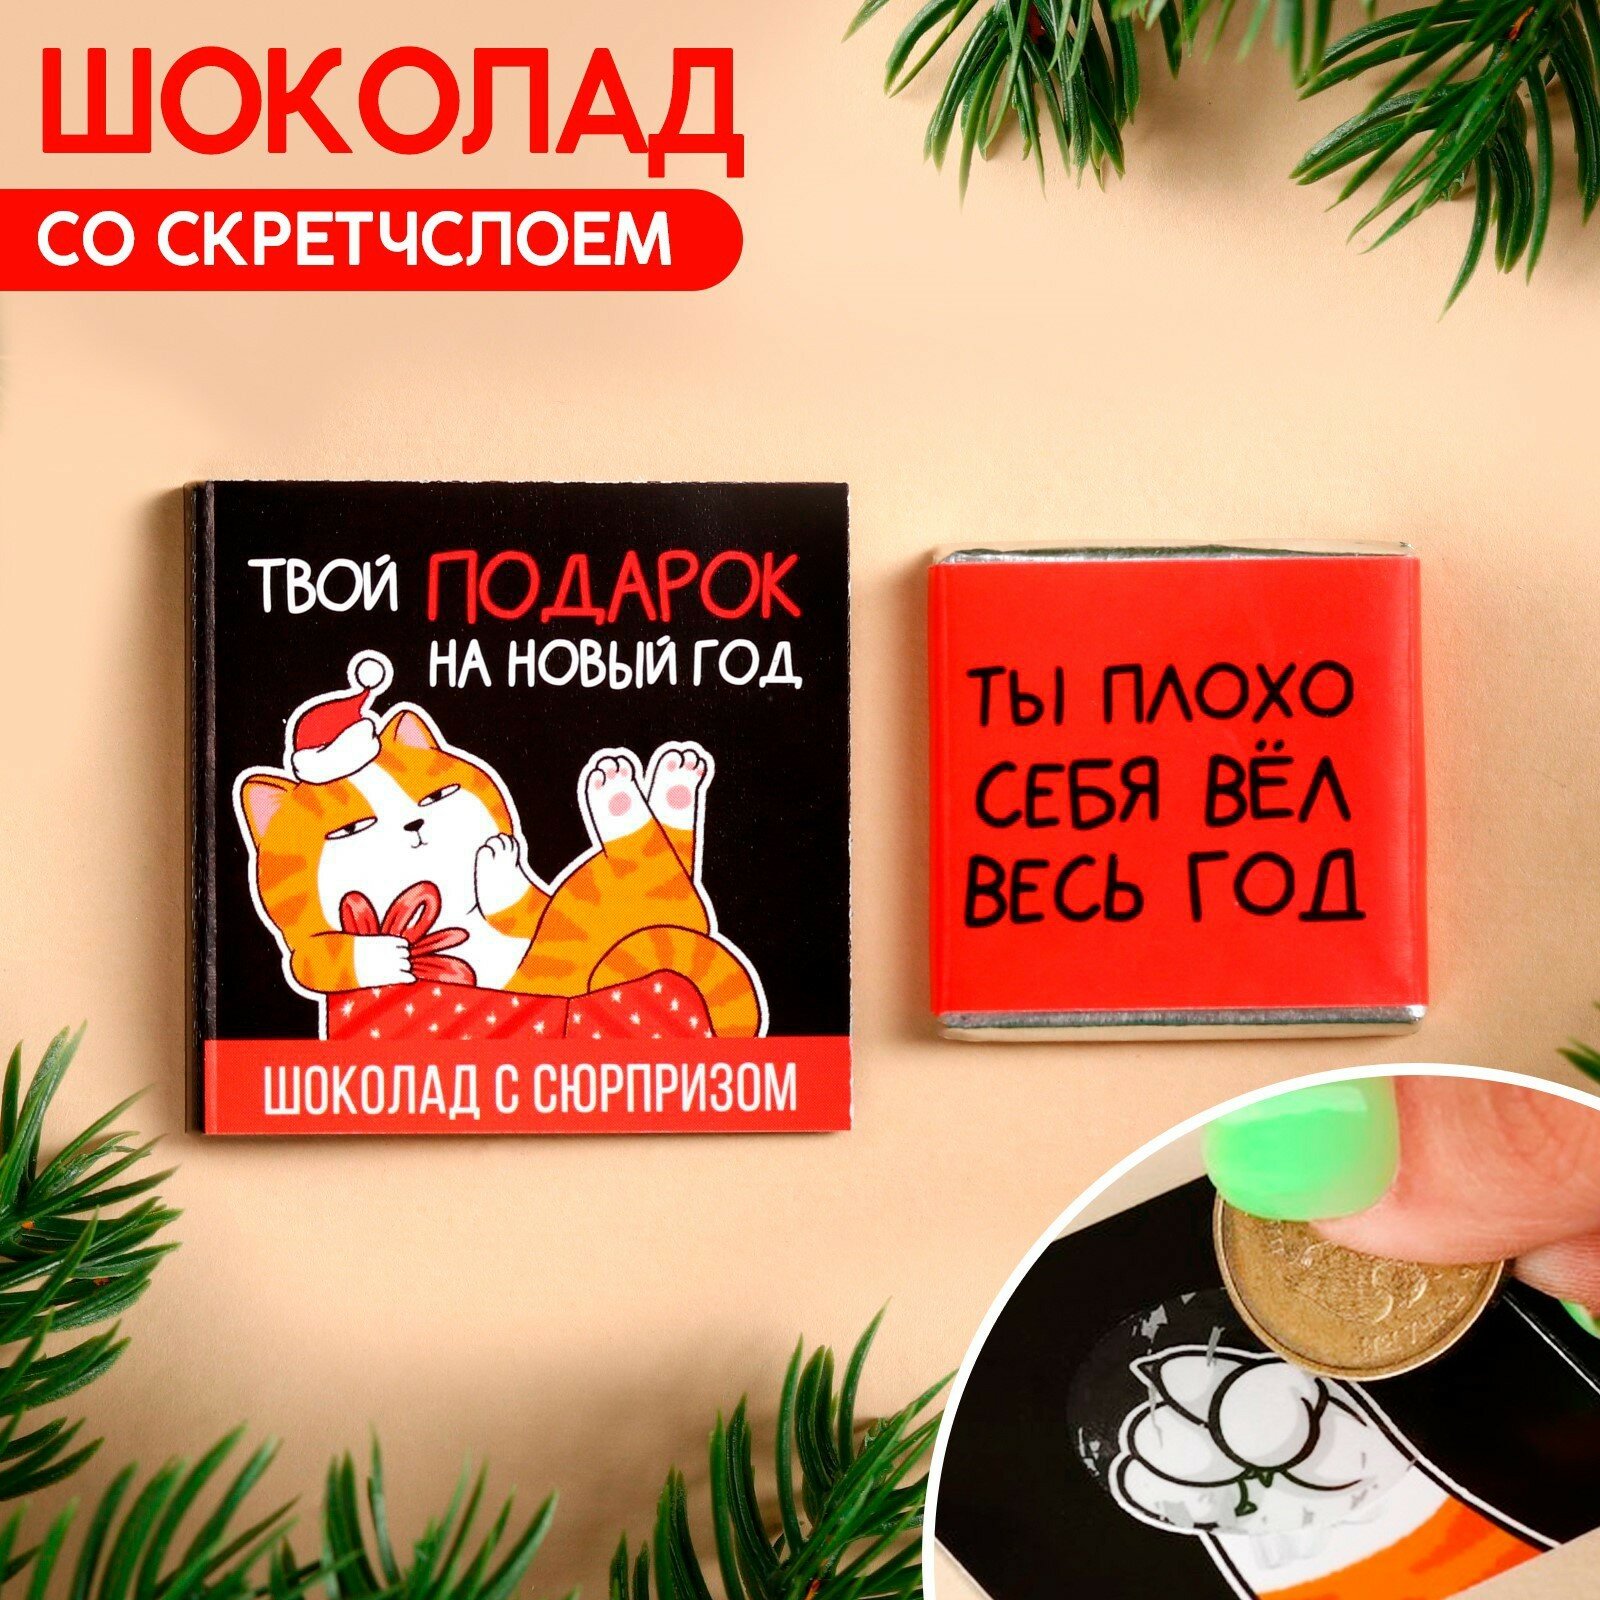 Молочный шоколад «Твой подарок на новый год» со скретчслоем, 1 шт. х 5 г.